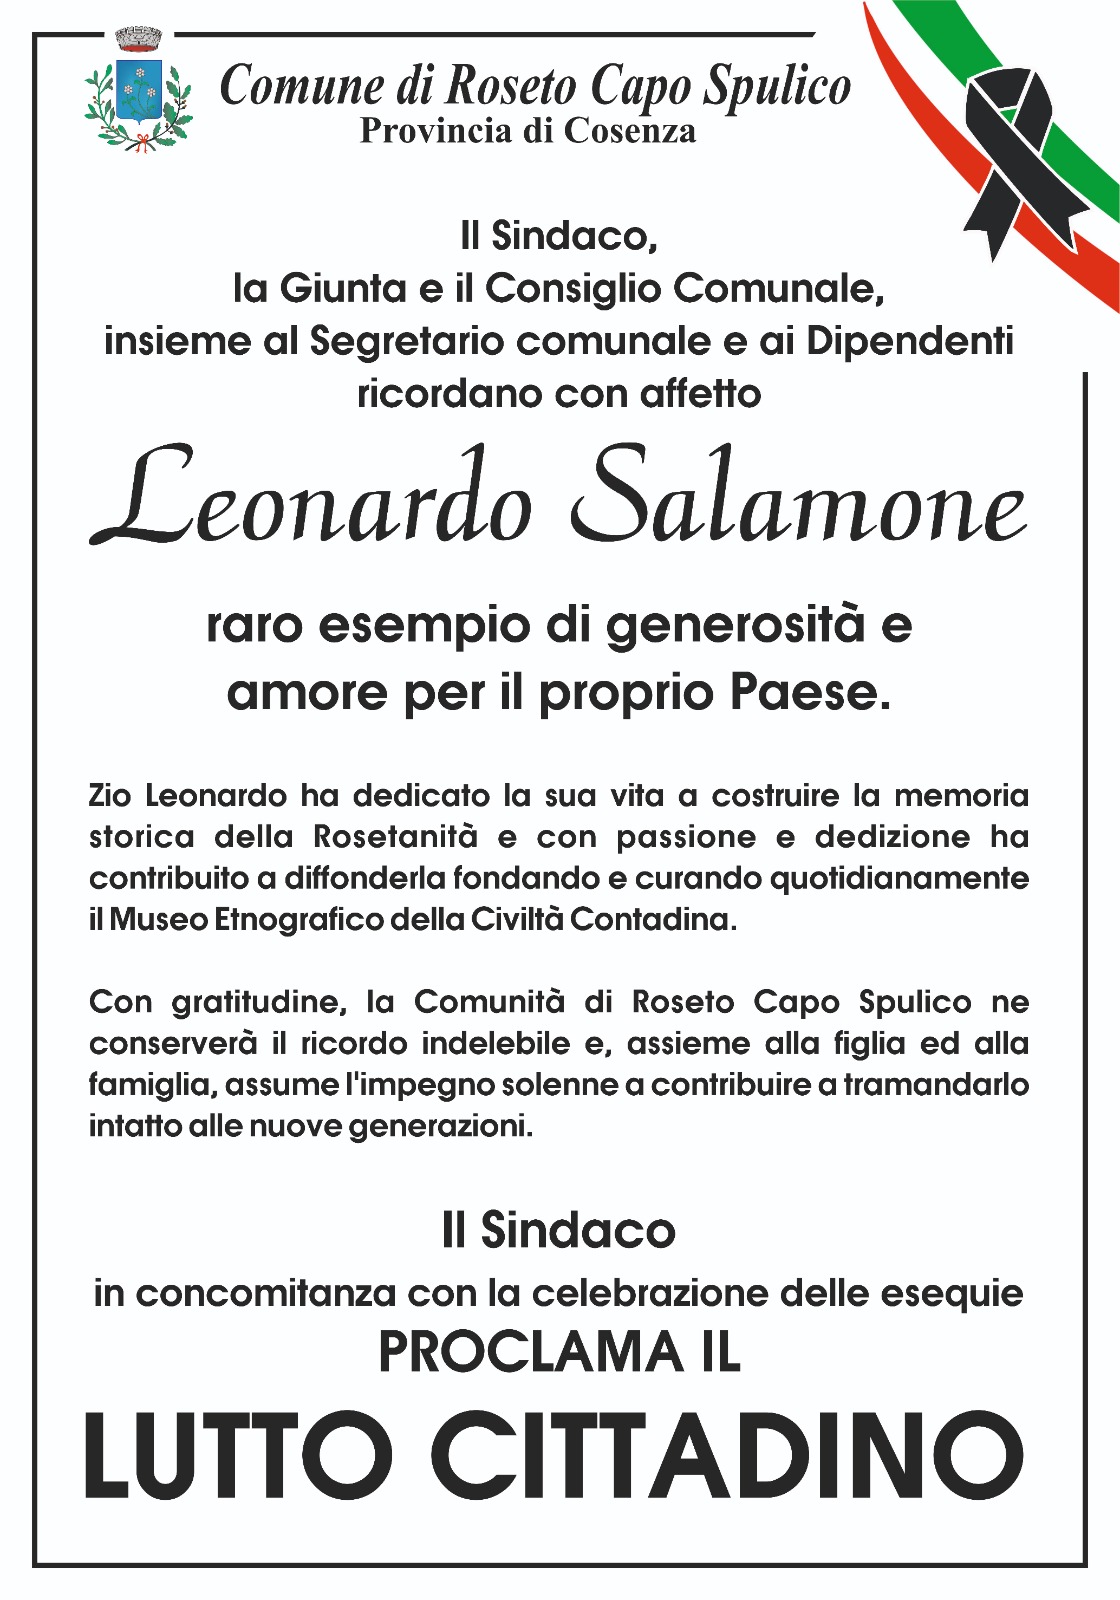 Lutto Cittadino per la scomparsa di Leonardo Salamone